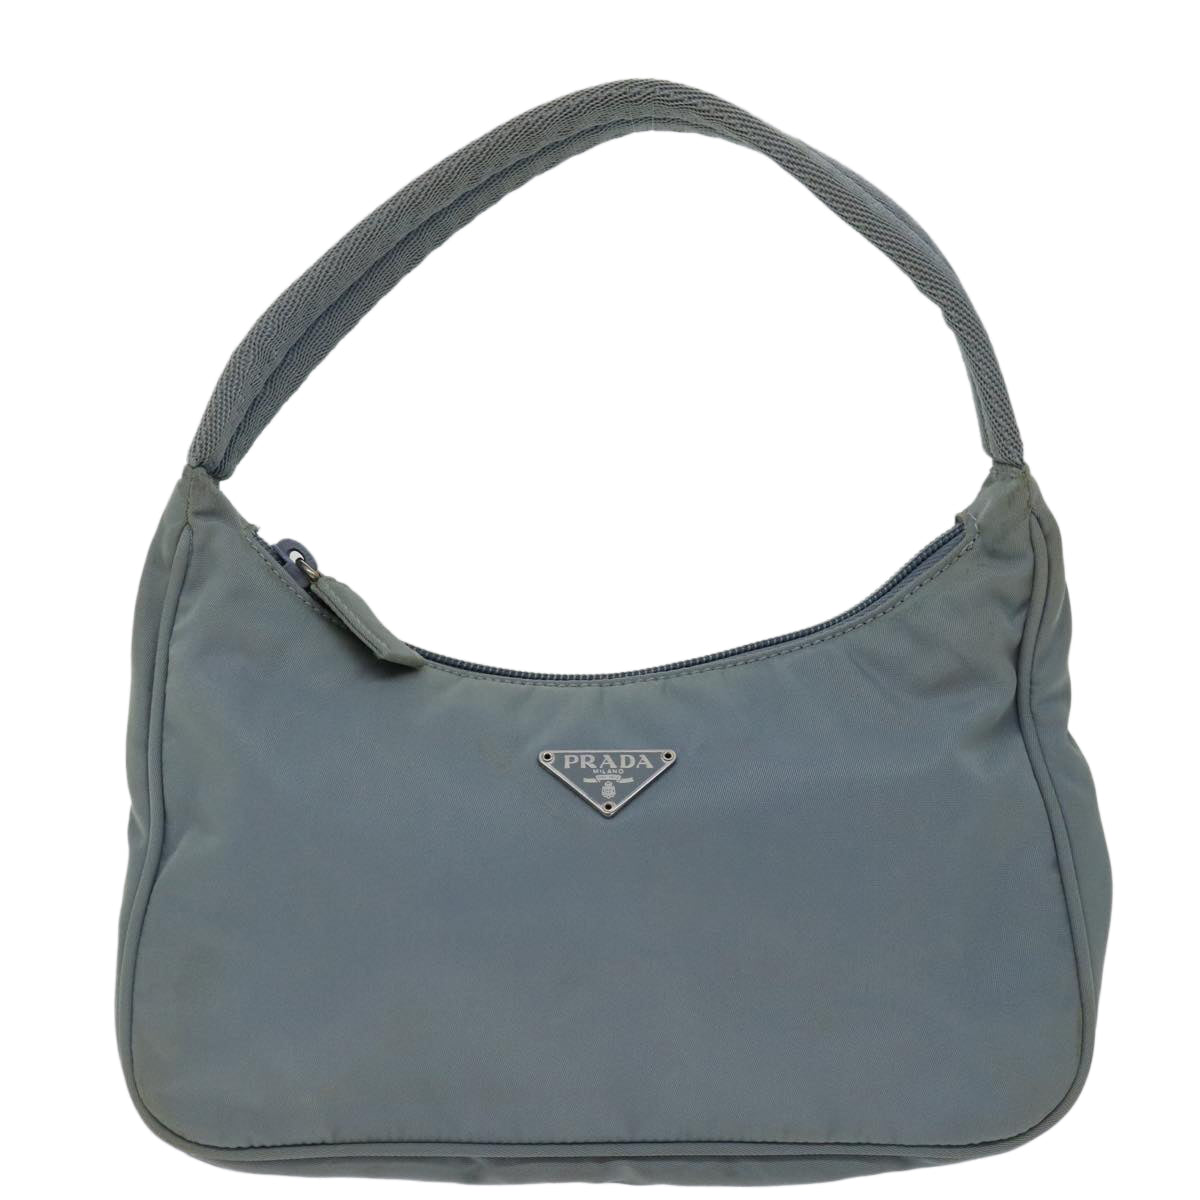 PRADA Hand Bag Nylon Light Blue Auth bs12579 - 0